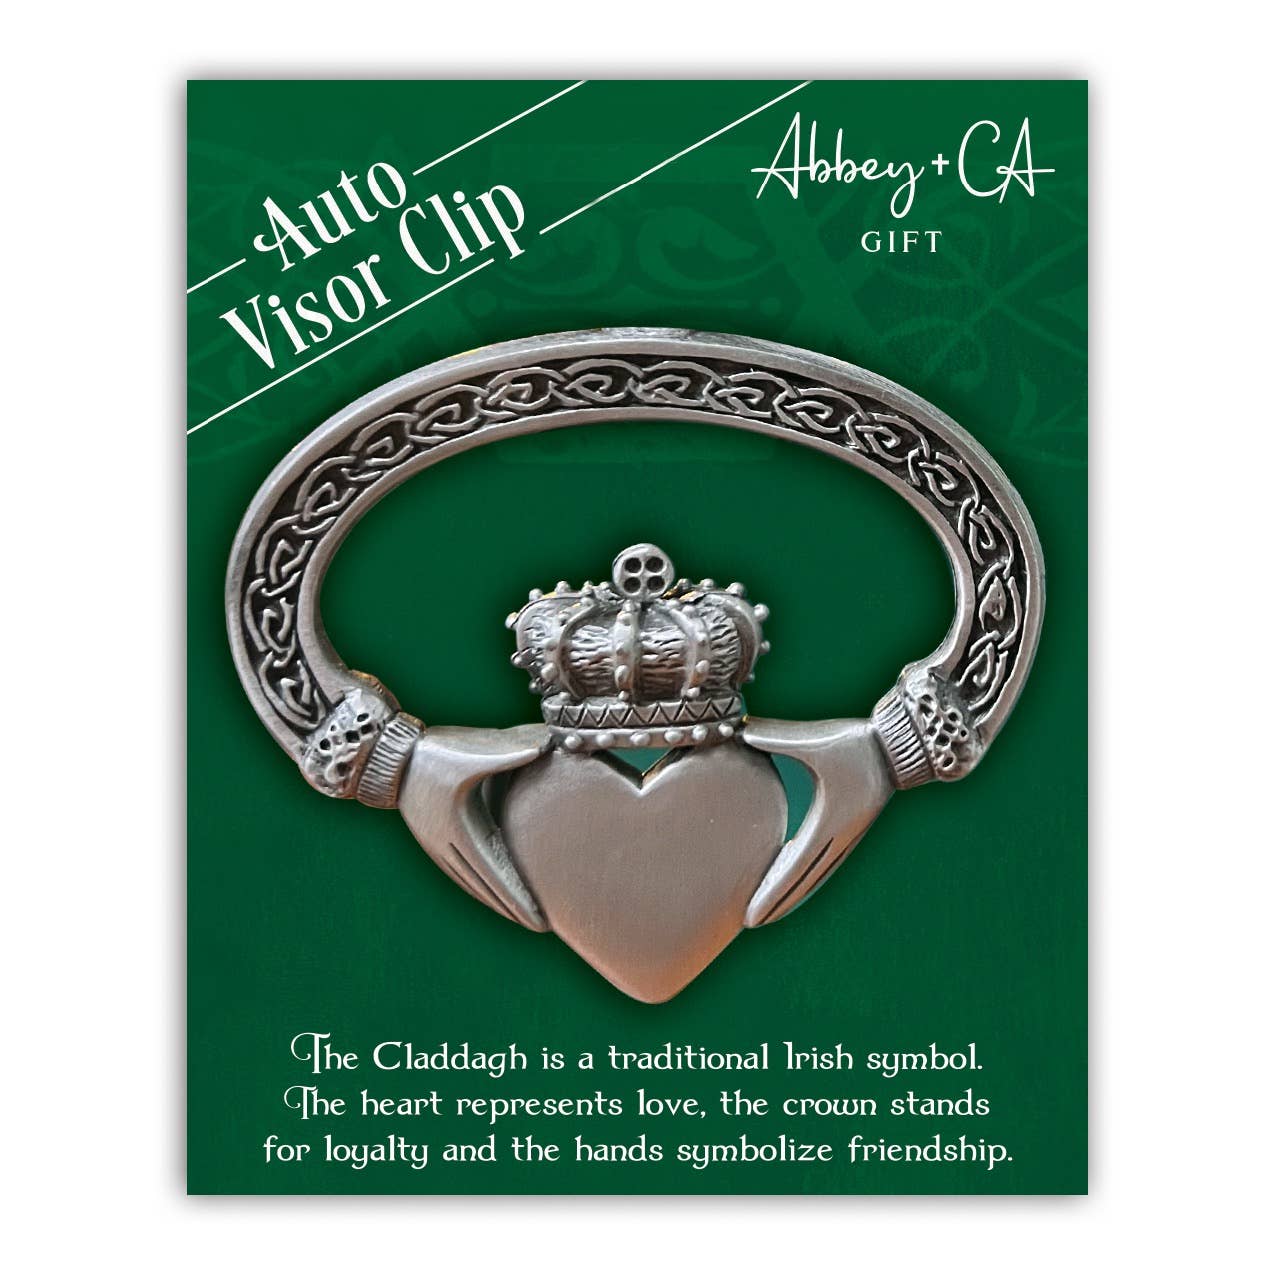 Abbey & CA Gift - Claddagh Visor Clip